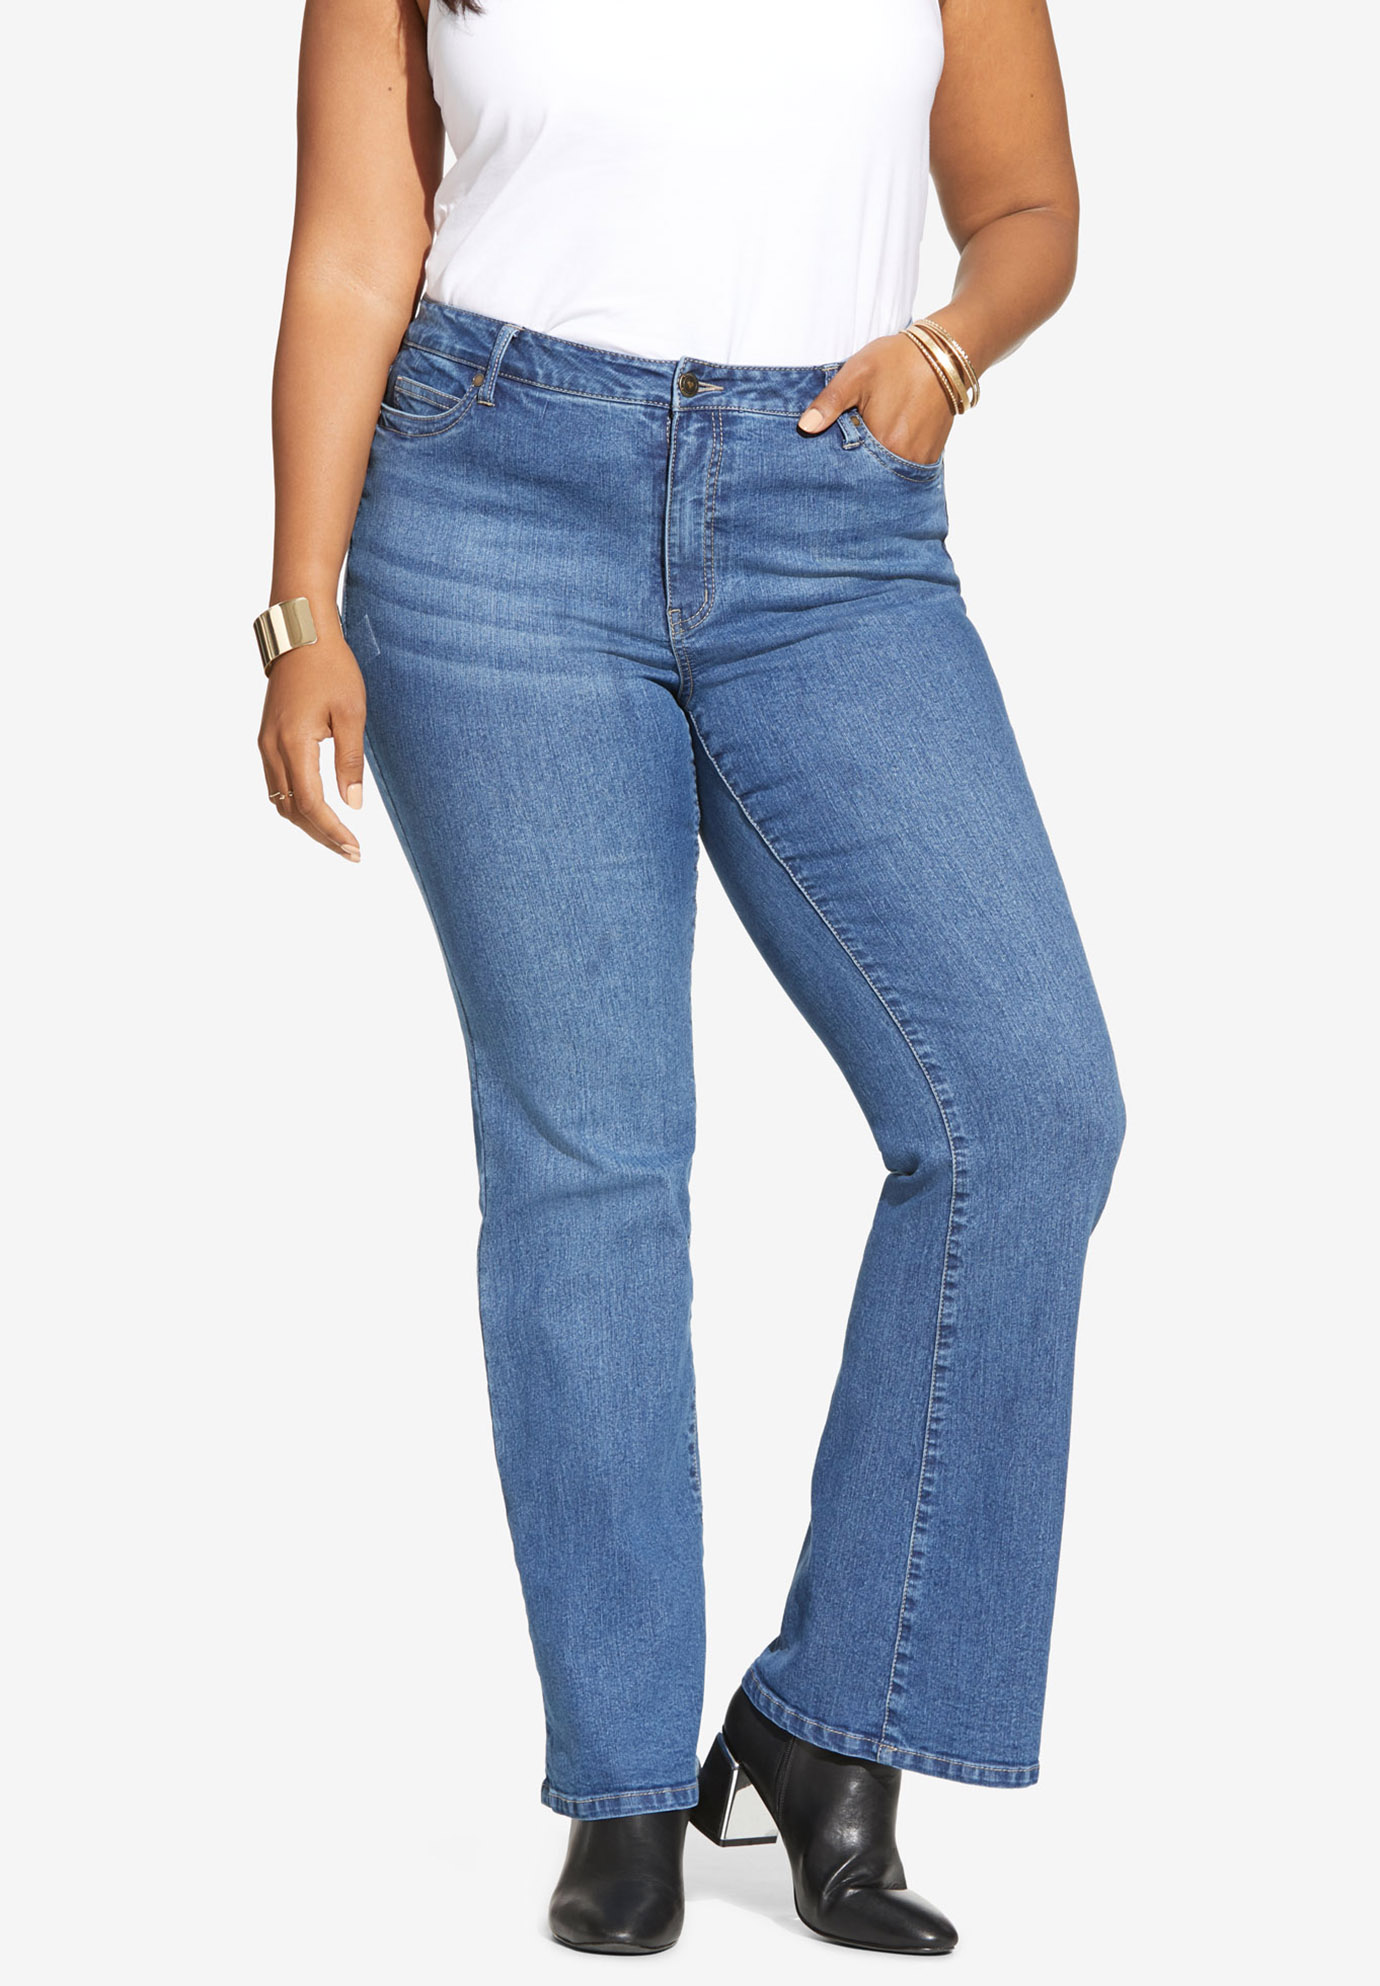 Flared-Leg Jean By Denim 24/7®| Plus Size Bootcut Jeans | Full Beauty